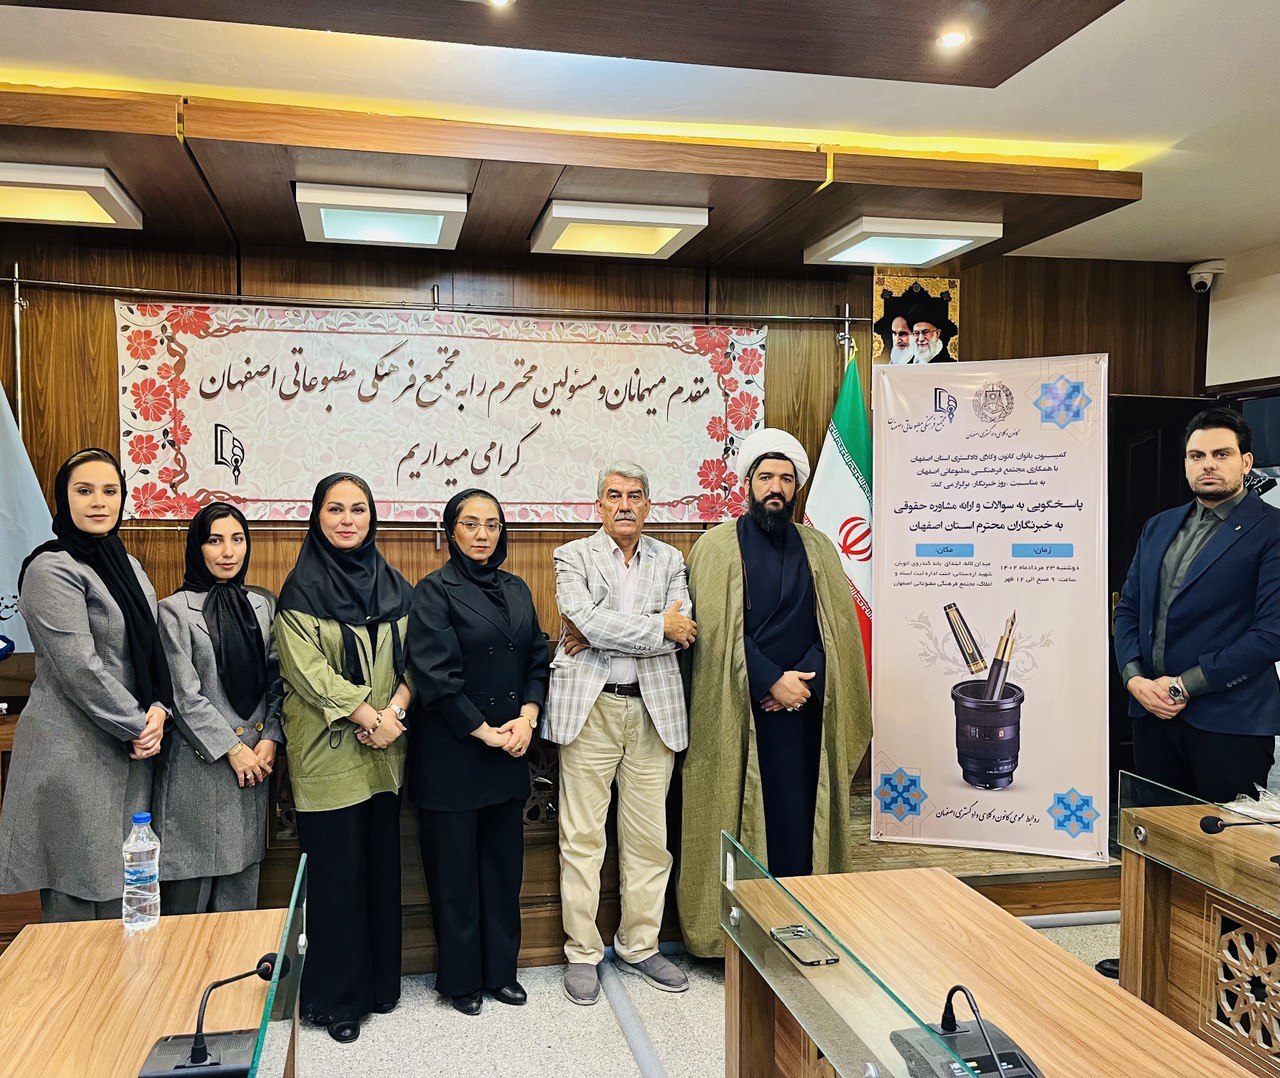 حضور اعضای کمیسیون بانوان کانون وکلای دادگستری اصفهان در مجتمع مطبوعاتی و ارائه مشاوره حقوقی به خبرنگاران محترم استان